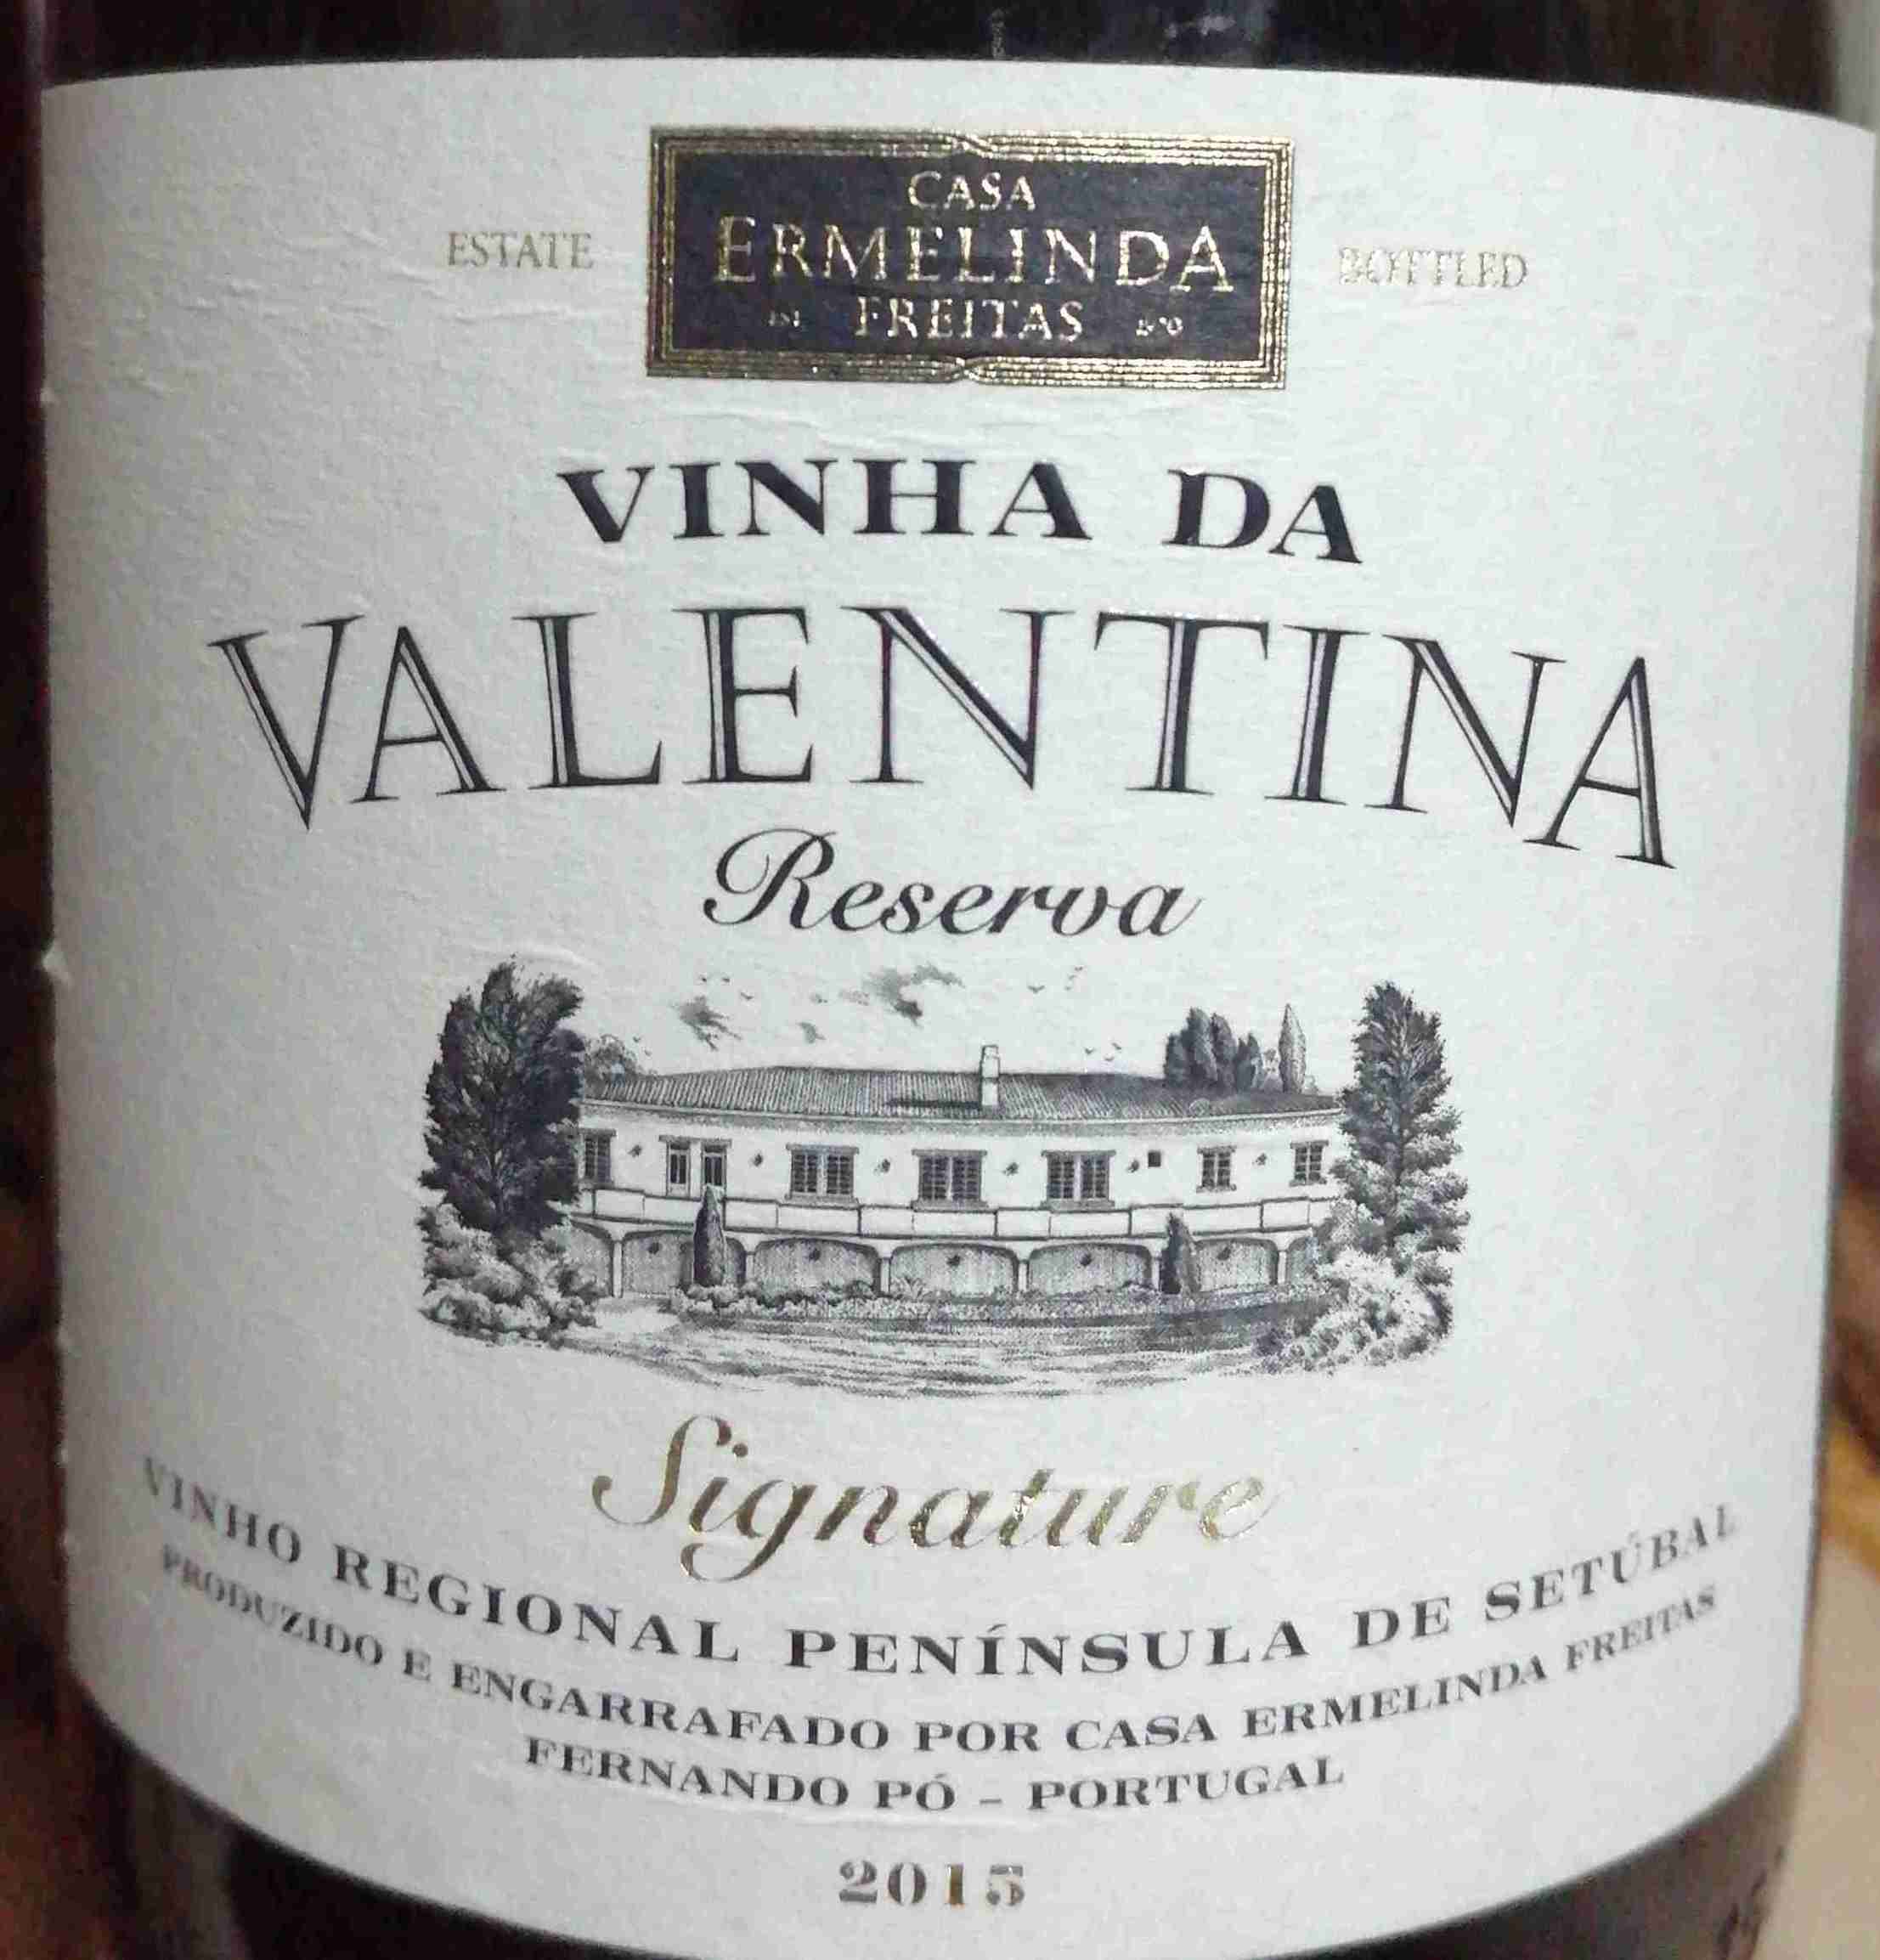 Casa Ermelinda Freitas Vinha da Valentina Peninsula Portugal-埃尔梅琳达·弗雷塔斯之家酒庄葡萄酒-价格-评价-中文名-红酒世界网 Signature Tinto, Reserva Setubal, de